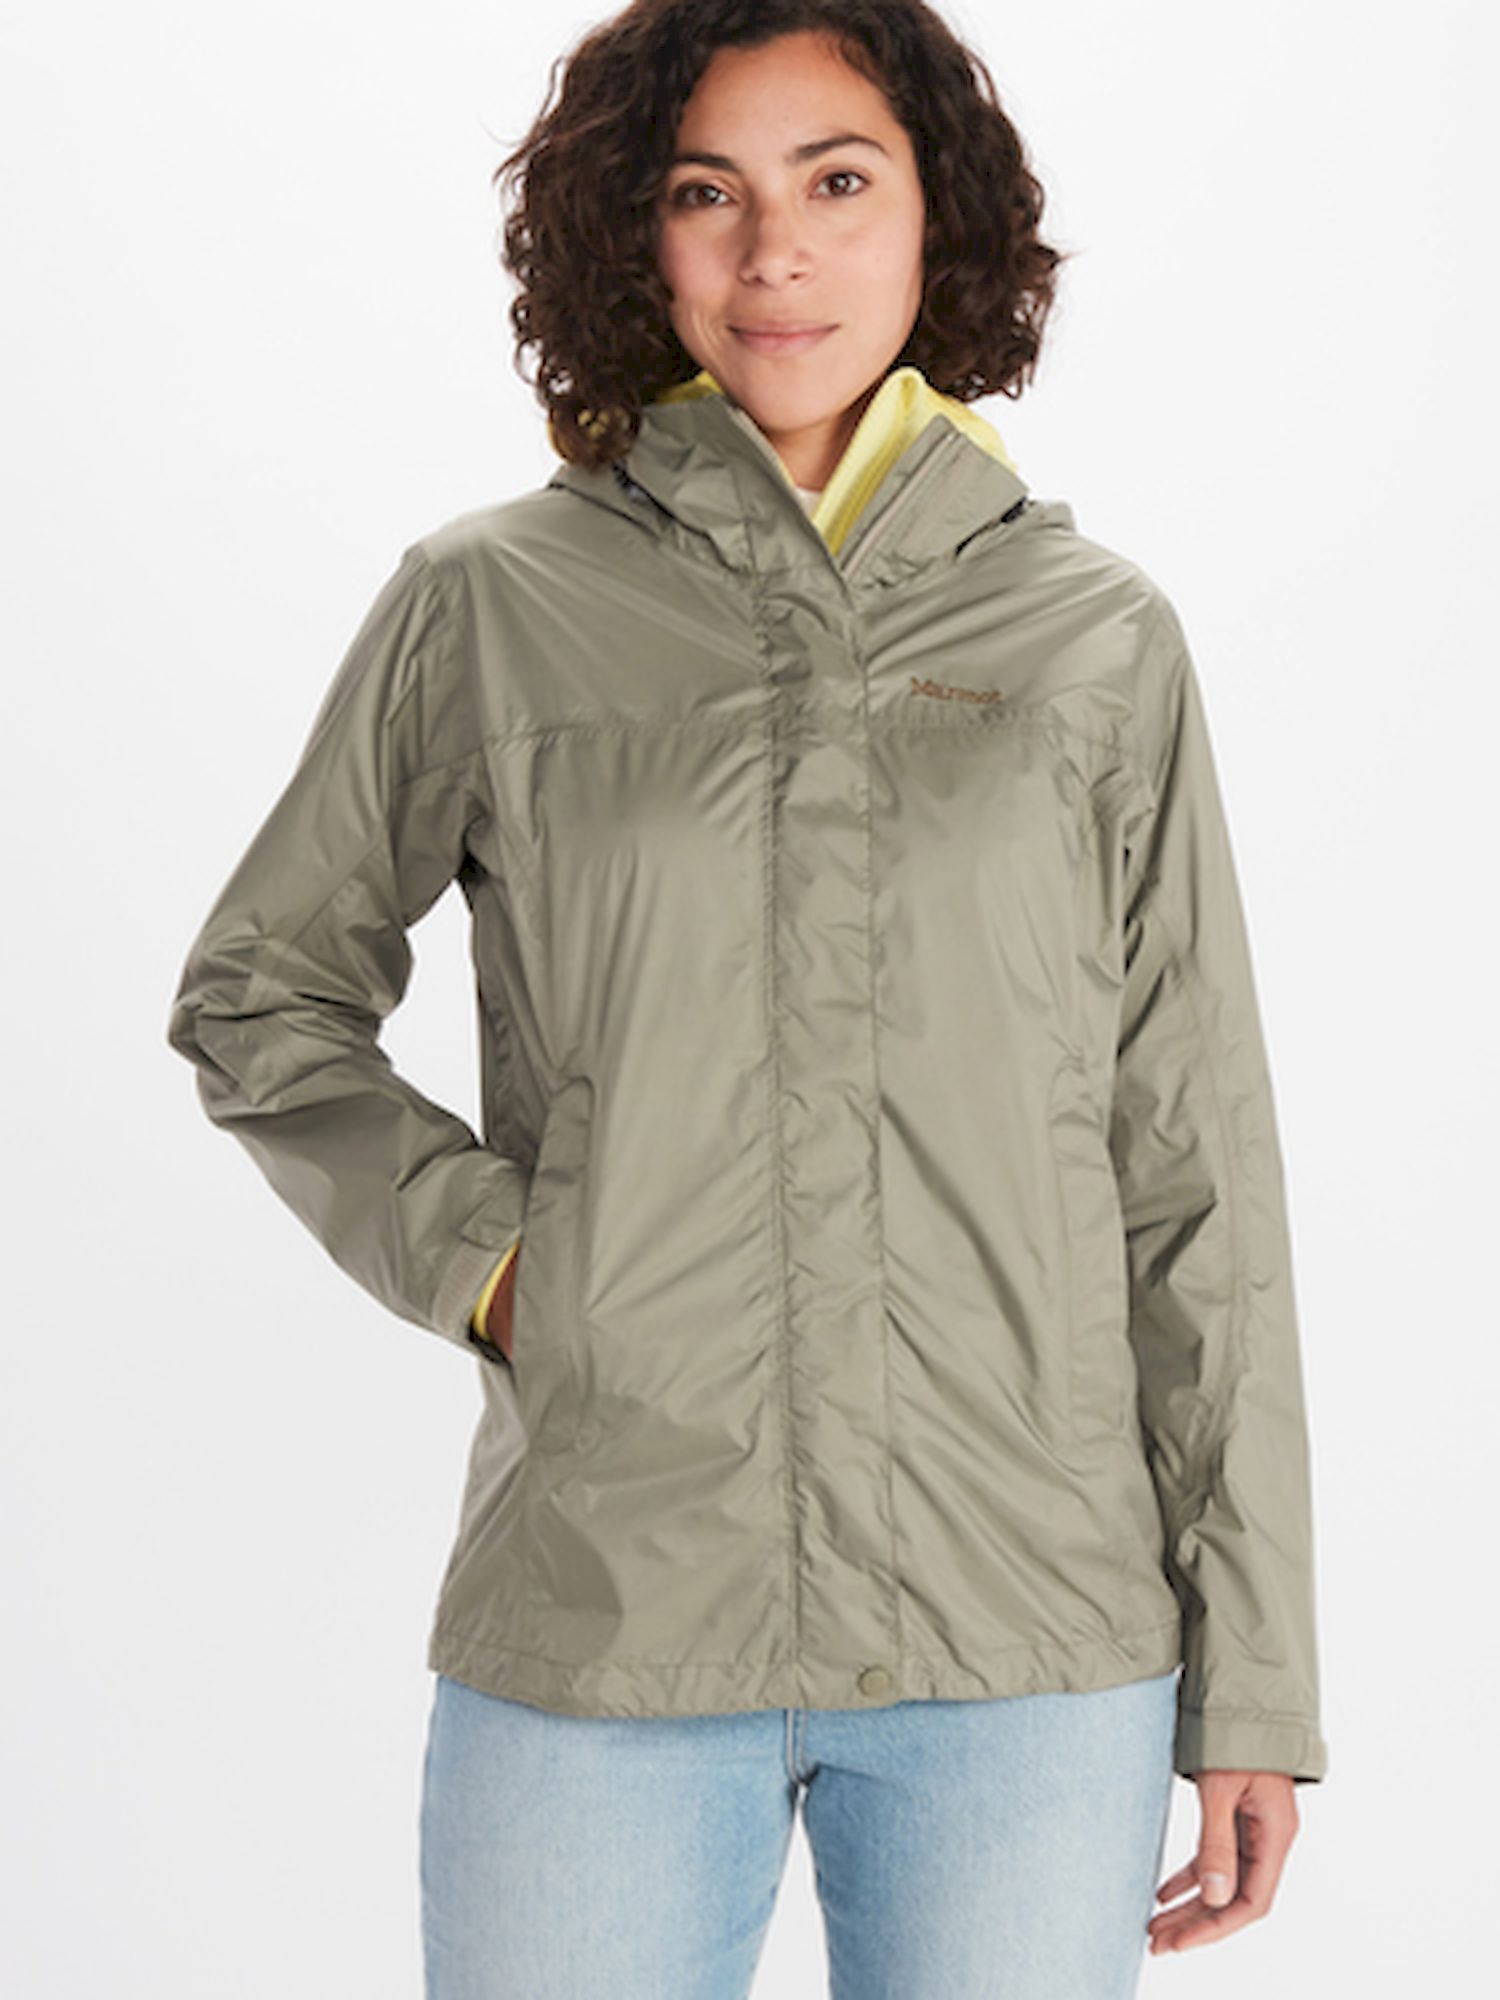 Marmot PreCip Eco Jacket - Regenjas - Dames